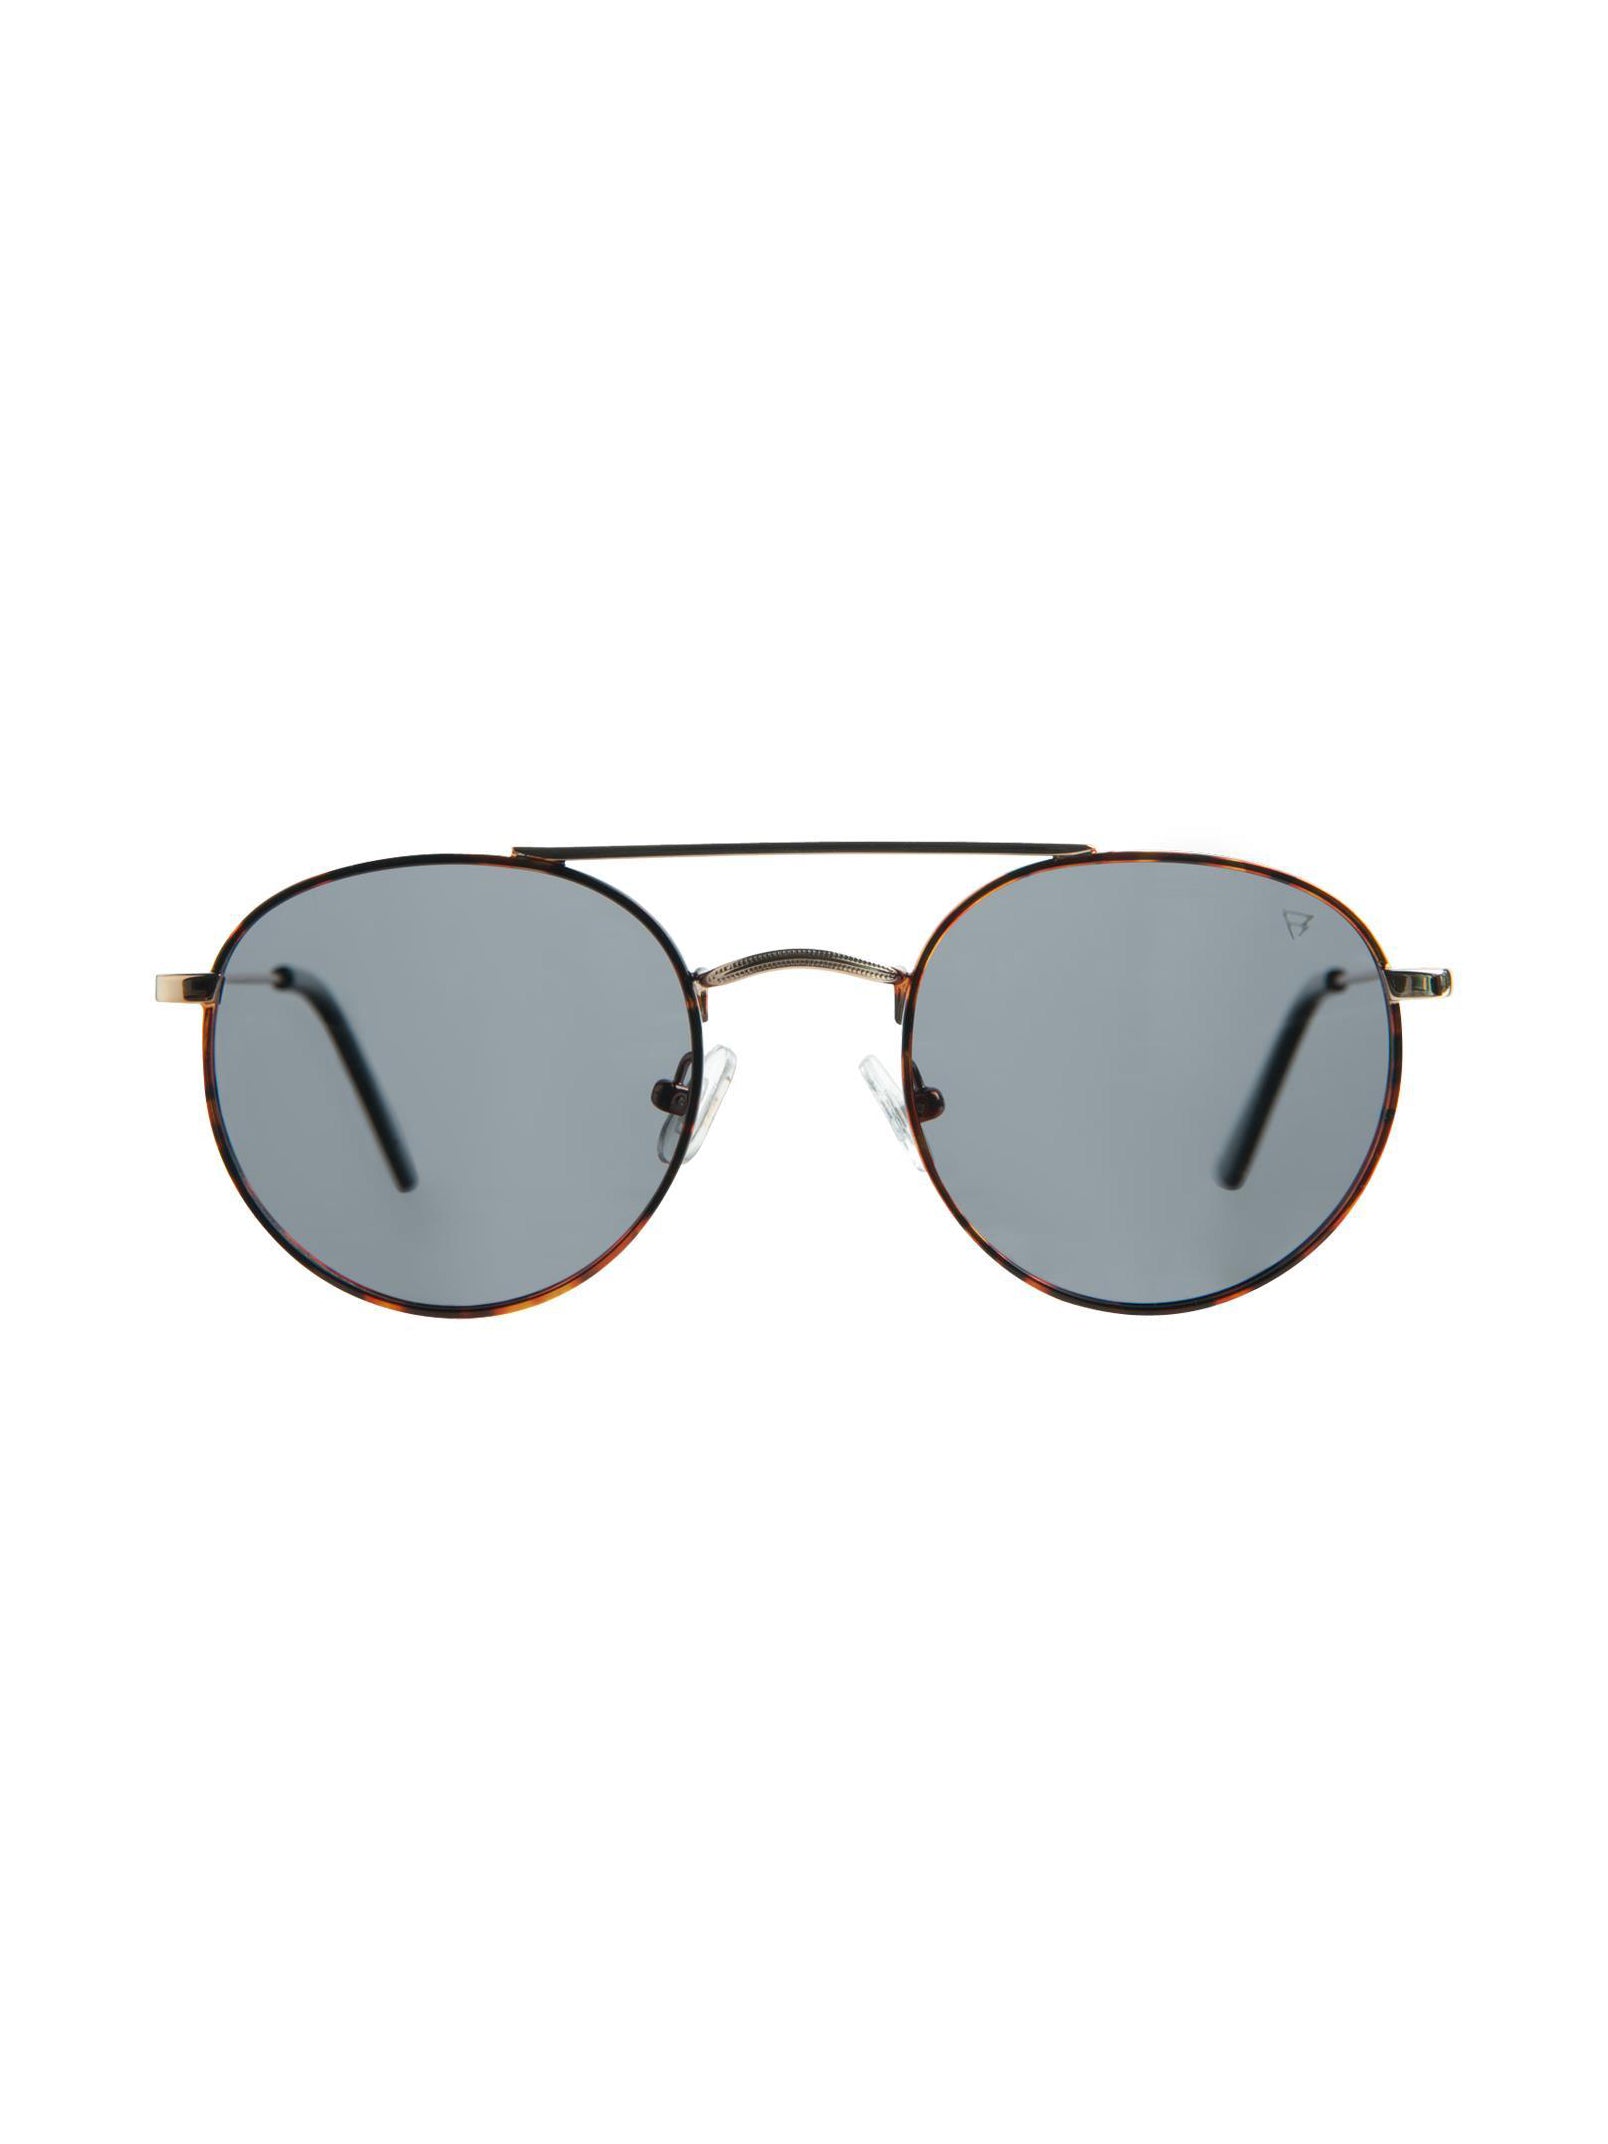 Banyoles-1 Sunglasses | Brown